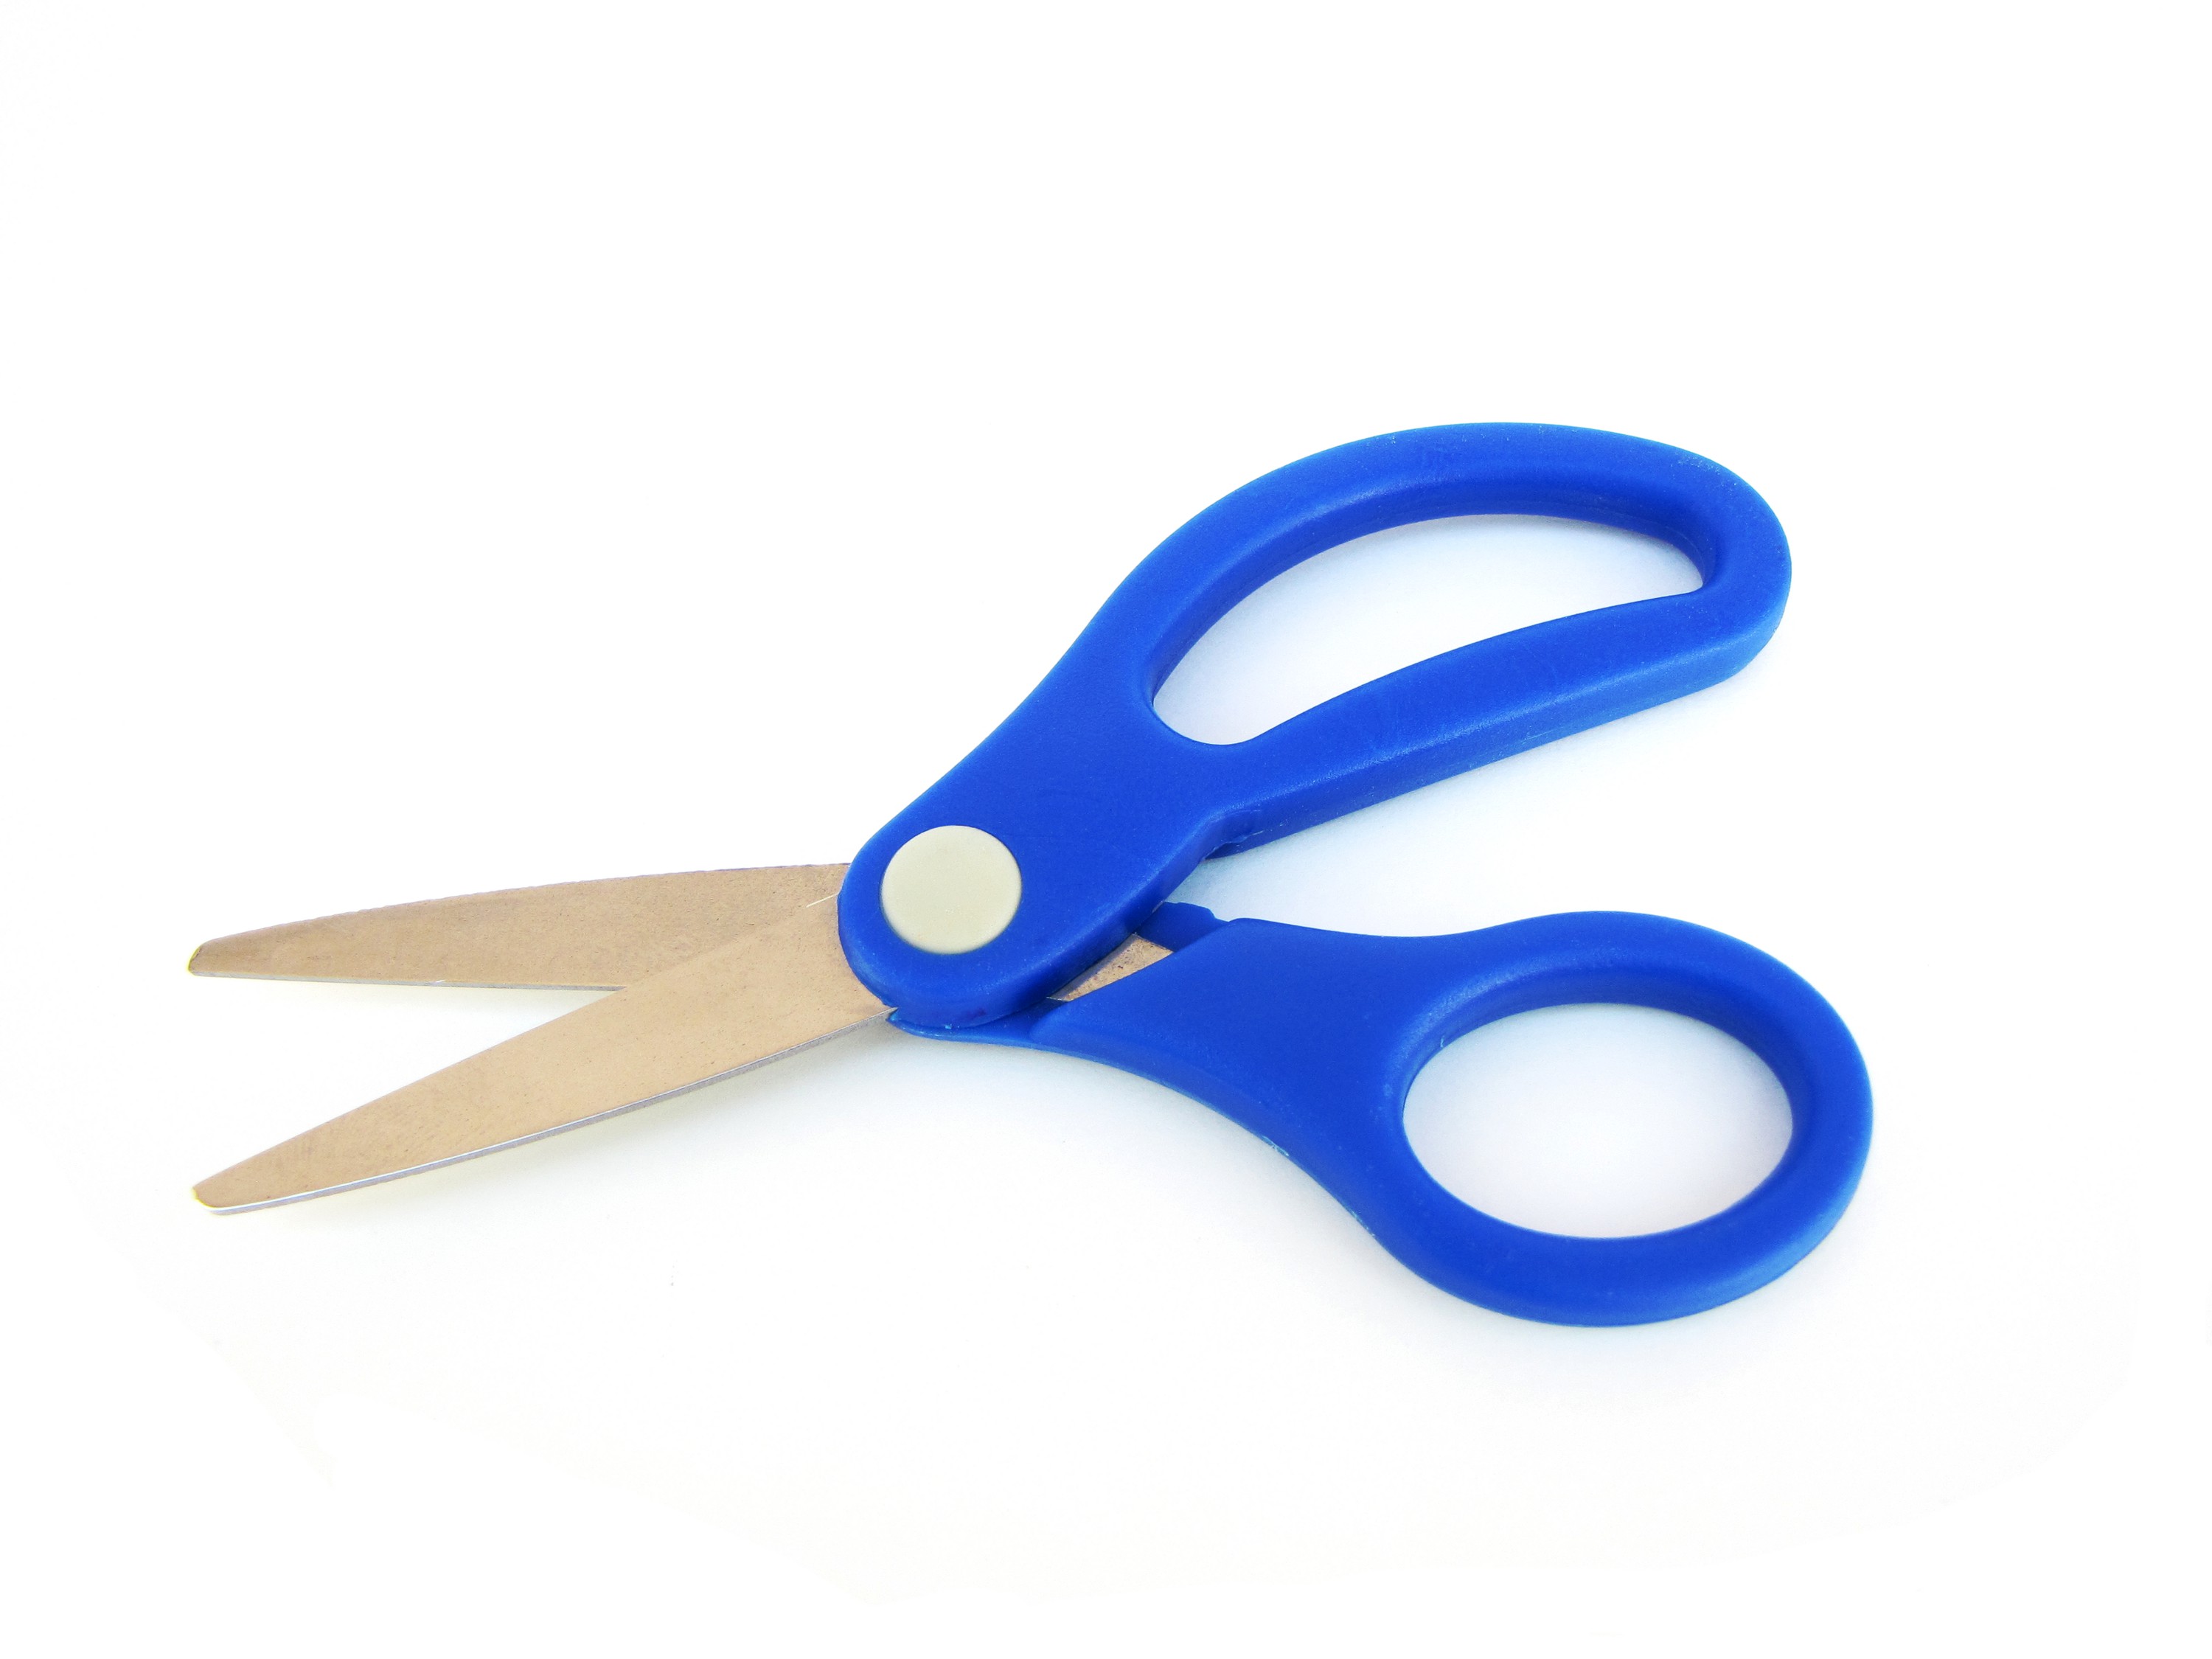 Small pair of blue scissors